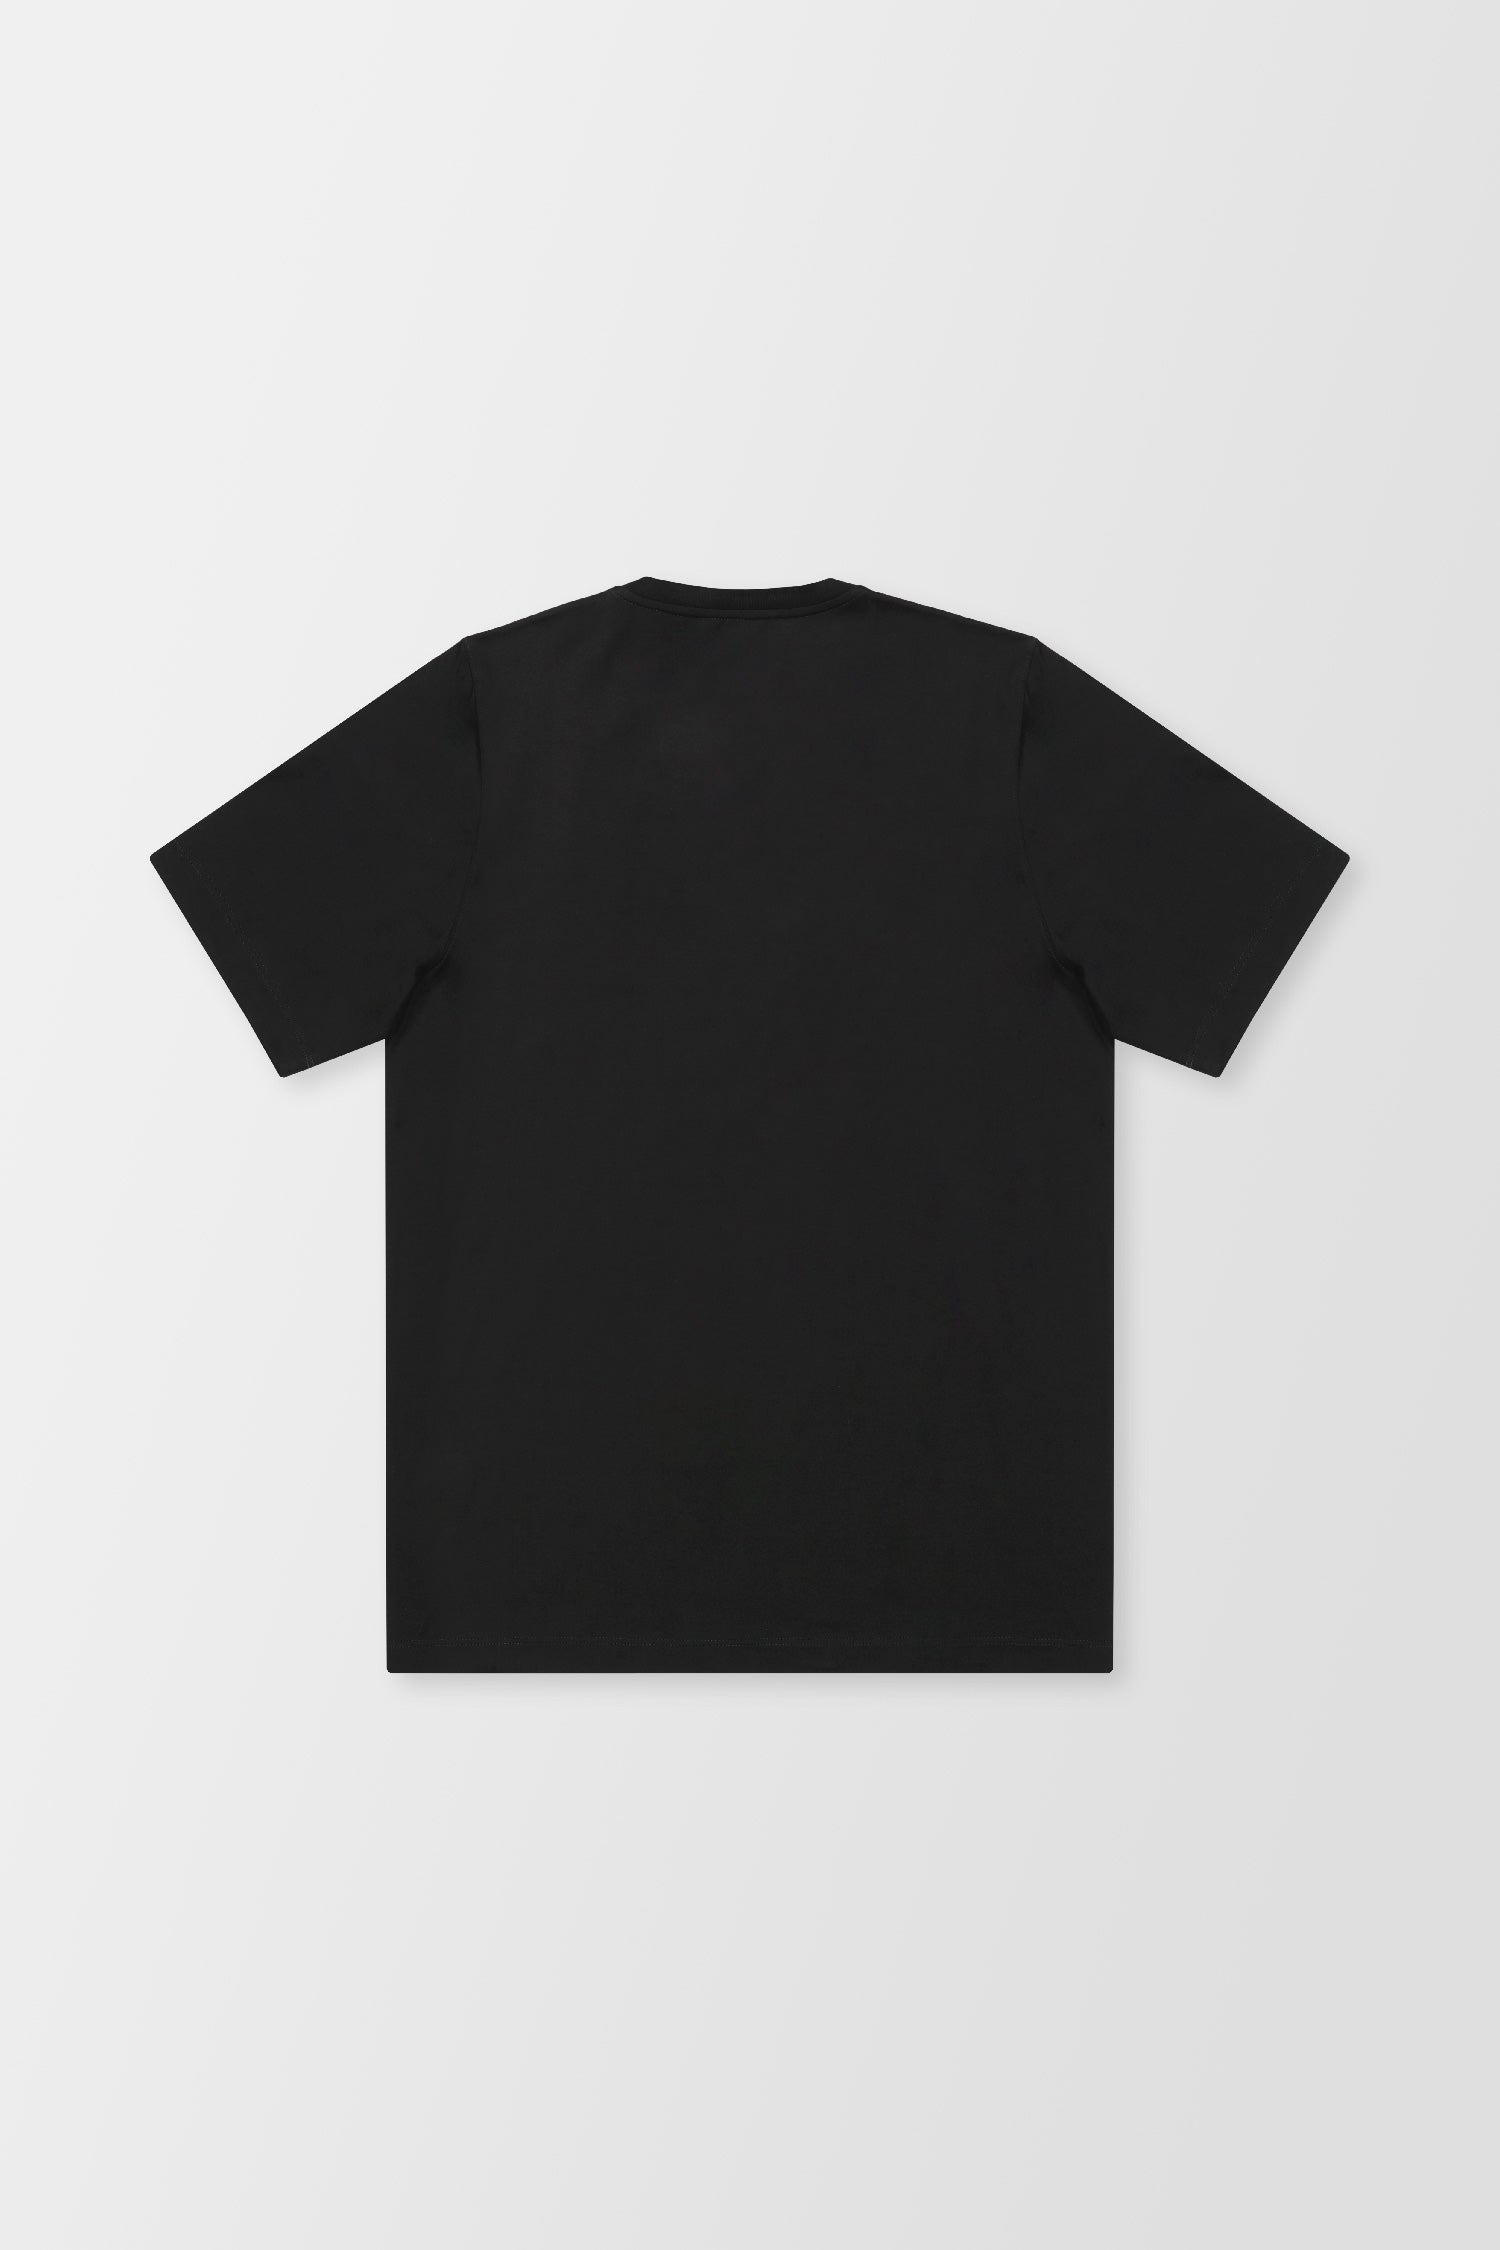 Zilli Black Broderie Pleine T-Shirt